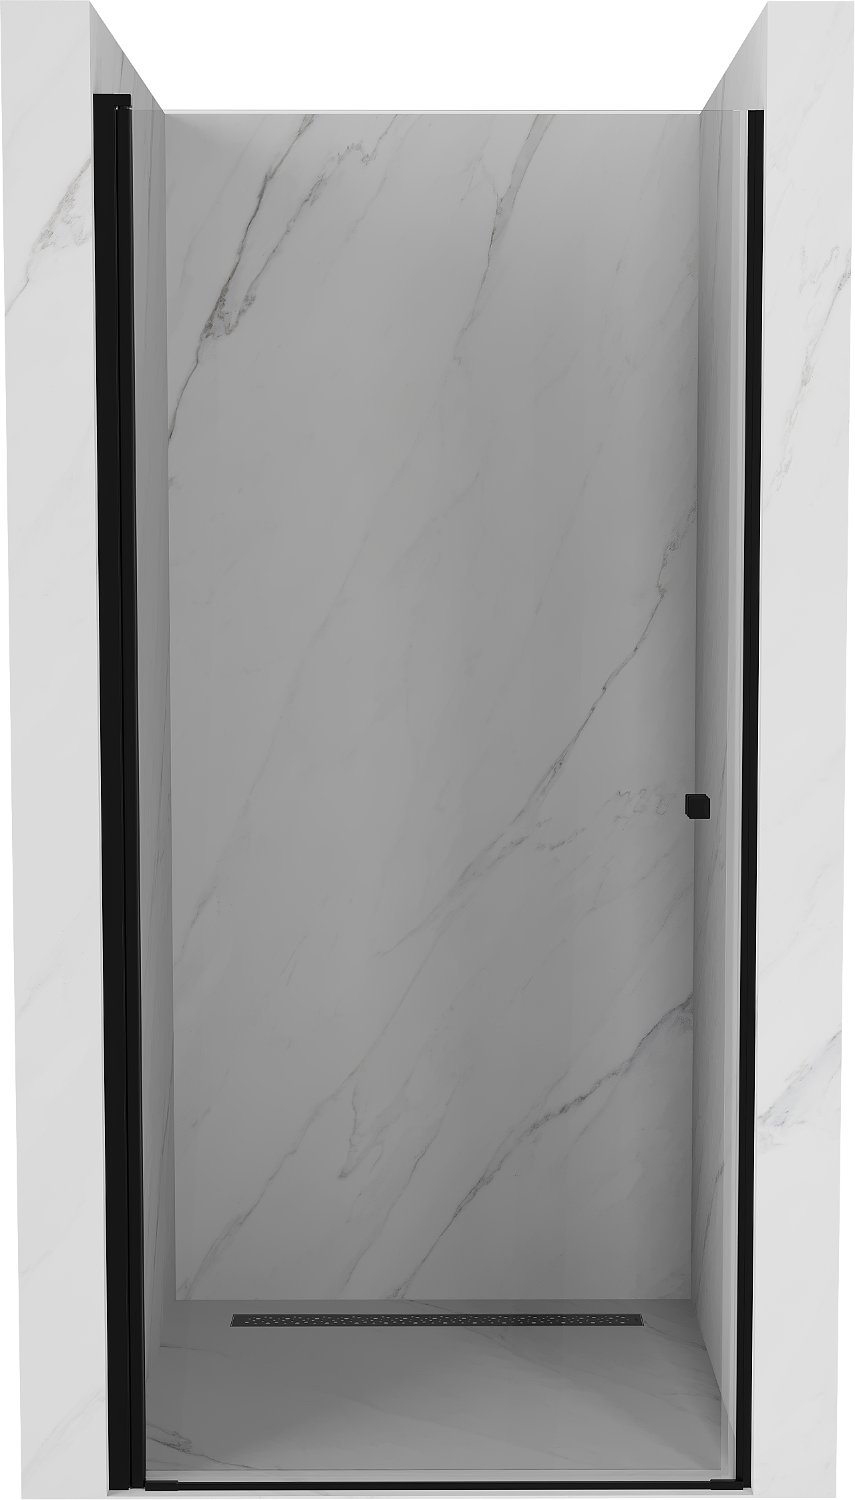 Mexen Pretoria drzwi prysznicowe uchylne 70 cm, transparent, czarne - 852-070-000-70-00